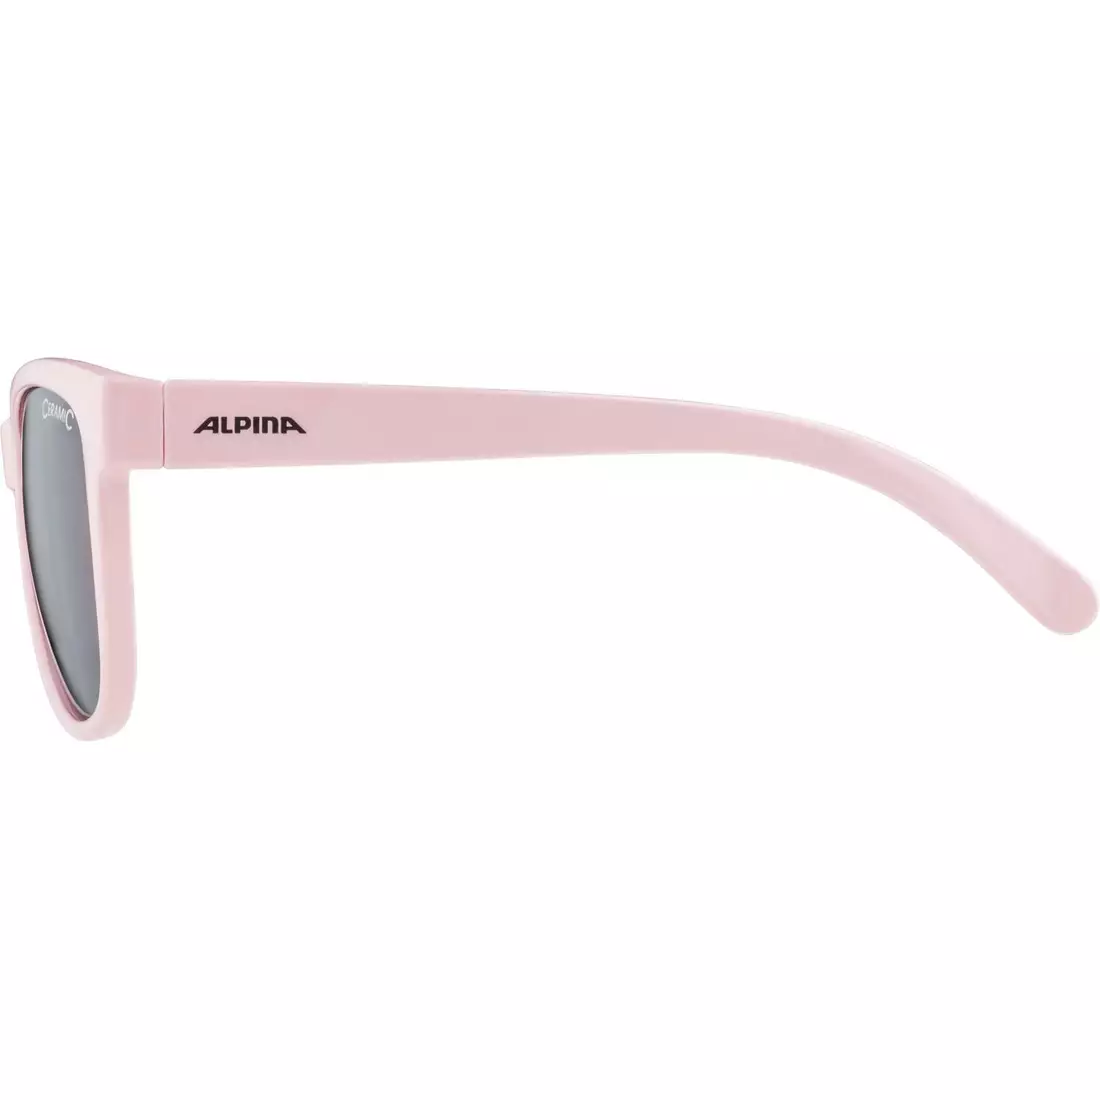 ALPINA JUNIOR LUZY cycling/sport glasses, rose gloss